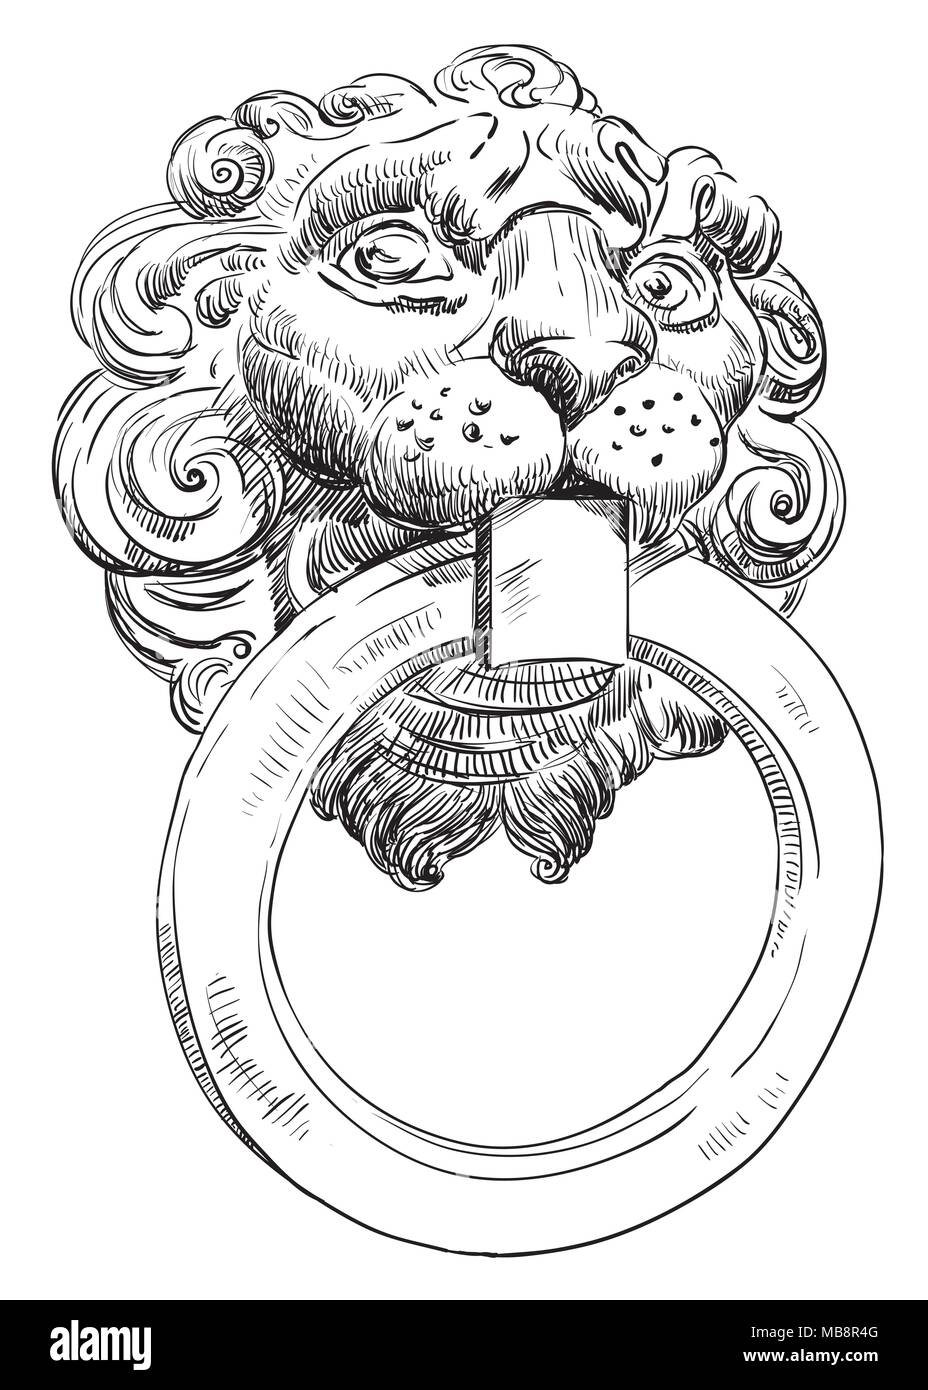 Manija de puerta antigua en la forma de una cabeza de león con un anillo en la boca, la mano de dibujo vectorial ilustración en color negro aislado sobre fondo blanco. Ilustración del Vector